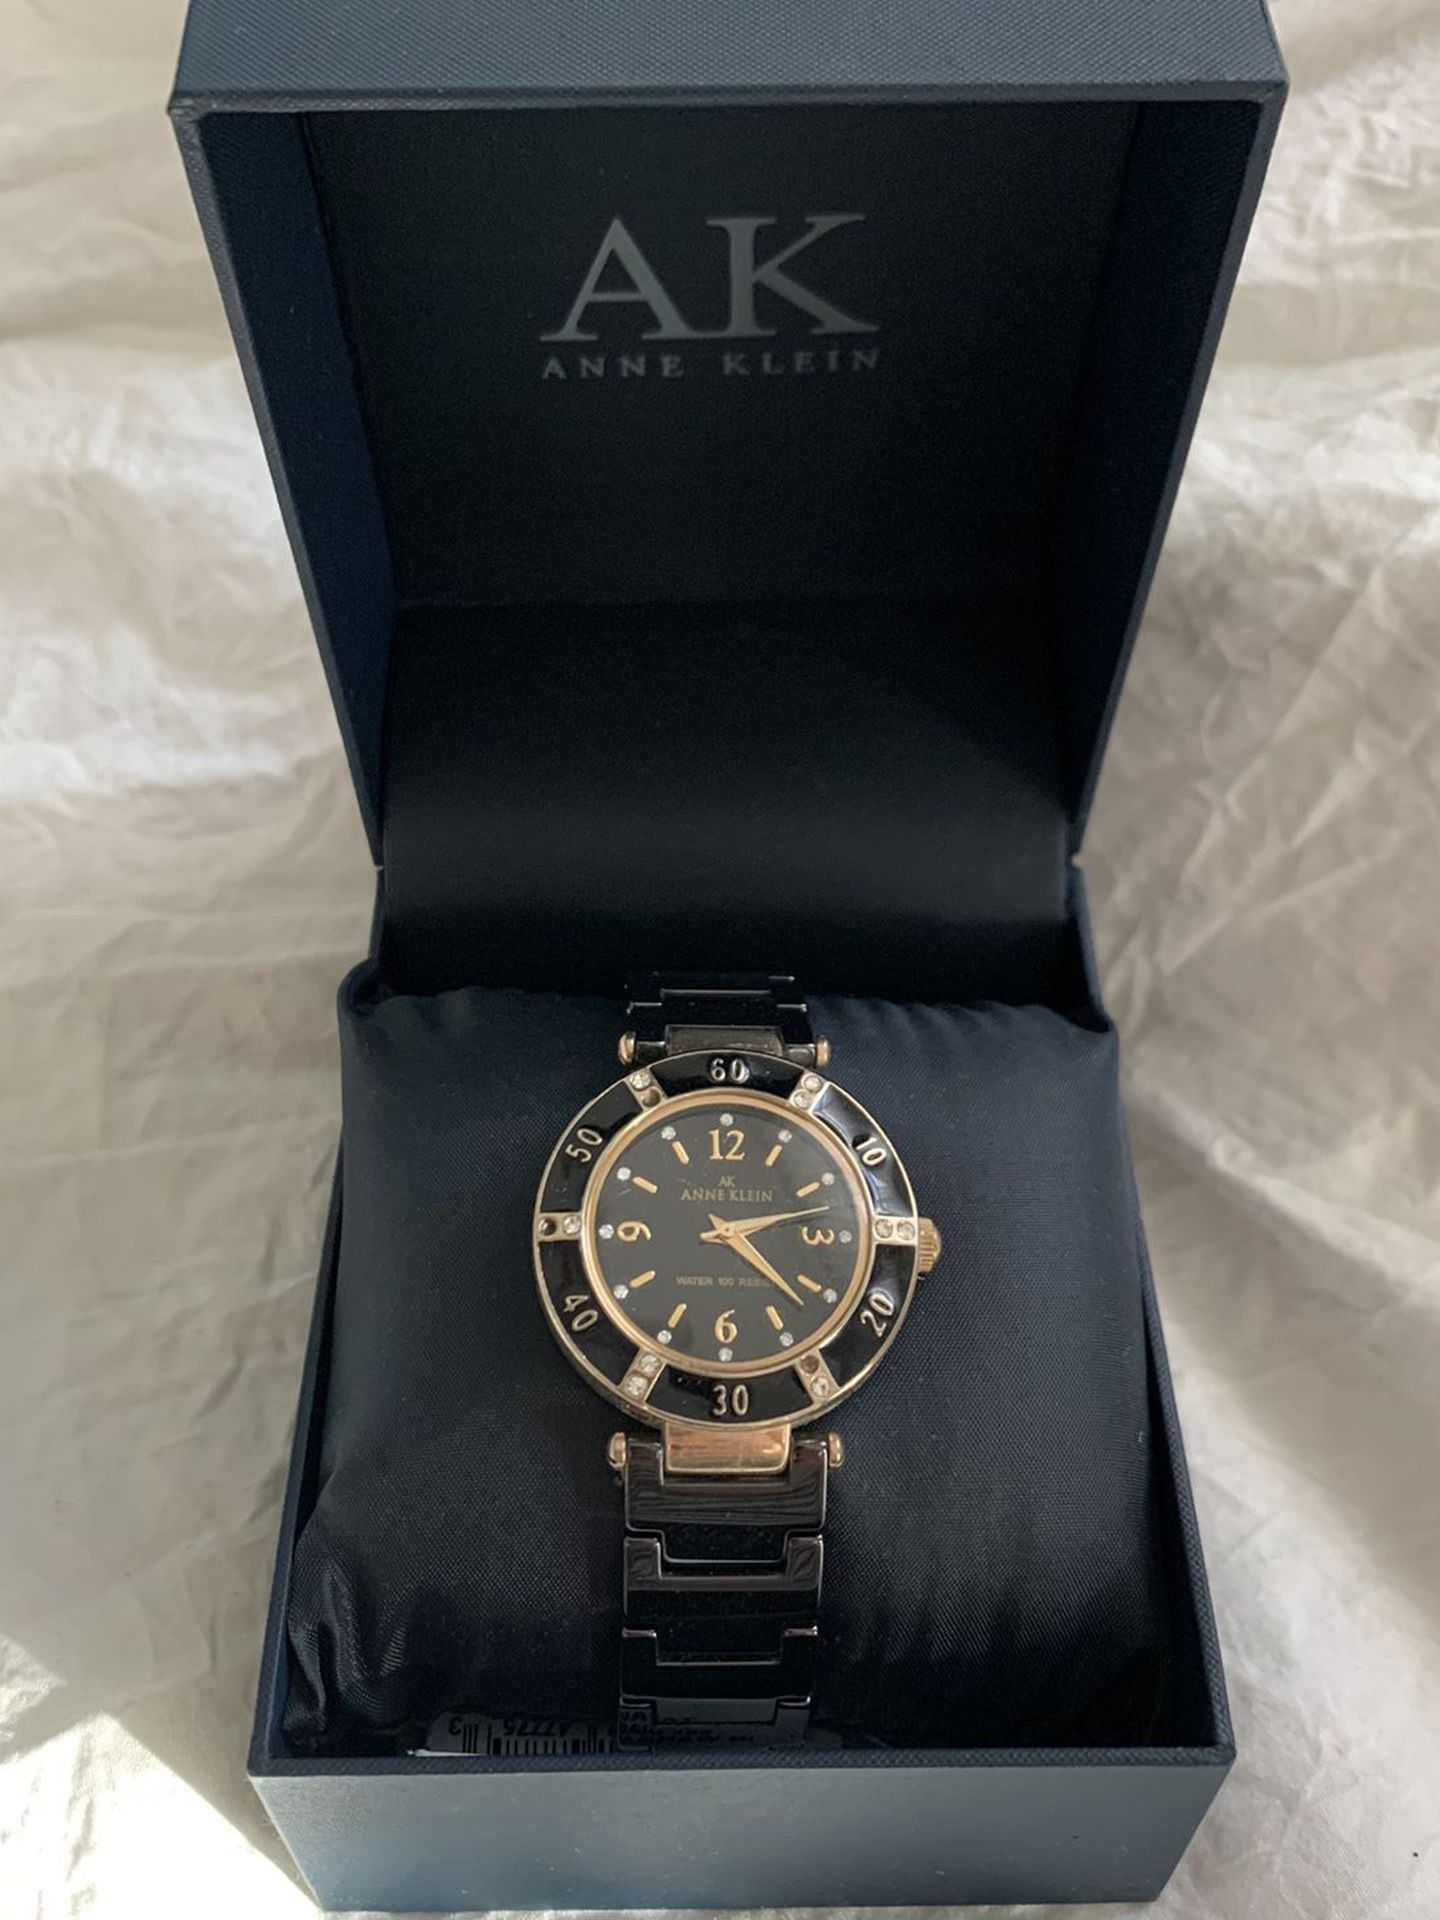 Anne Klein black and gold watch